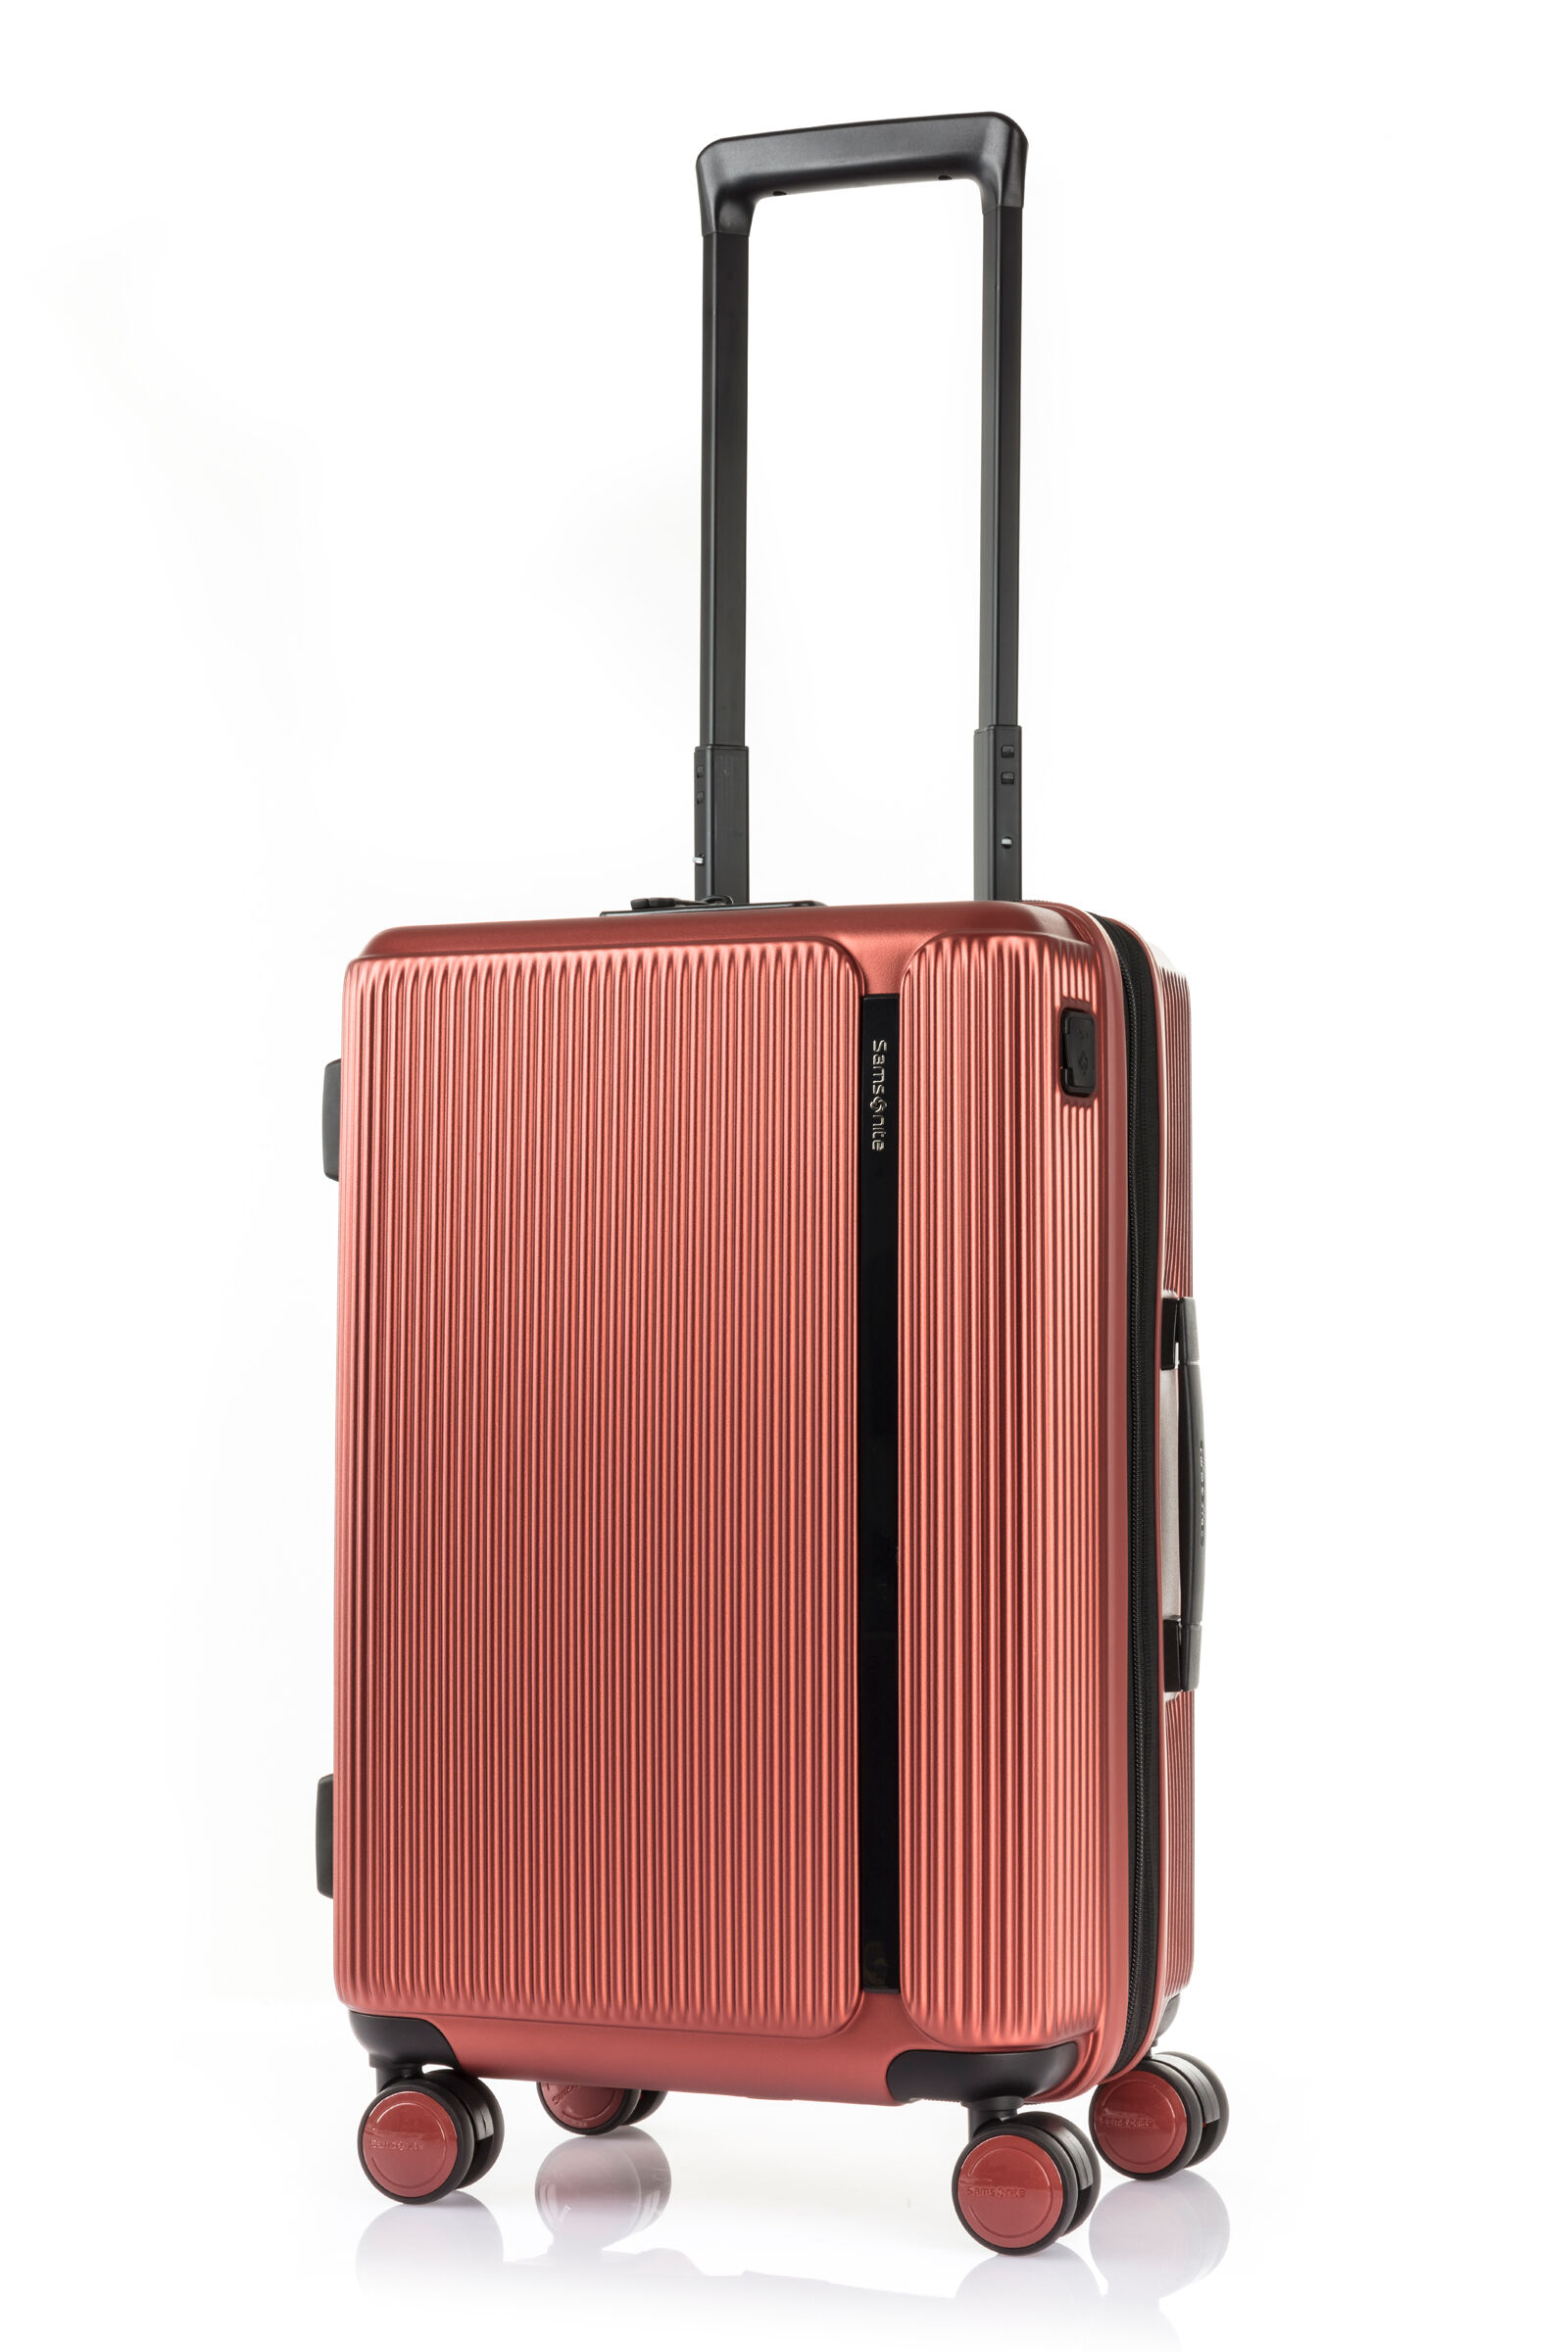 スーツケース サムソナイト マイトン スピナー55 20 EXP 55cm Sサイズ